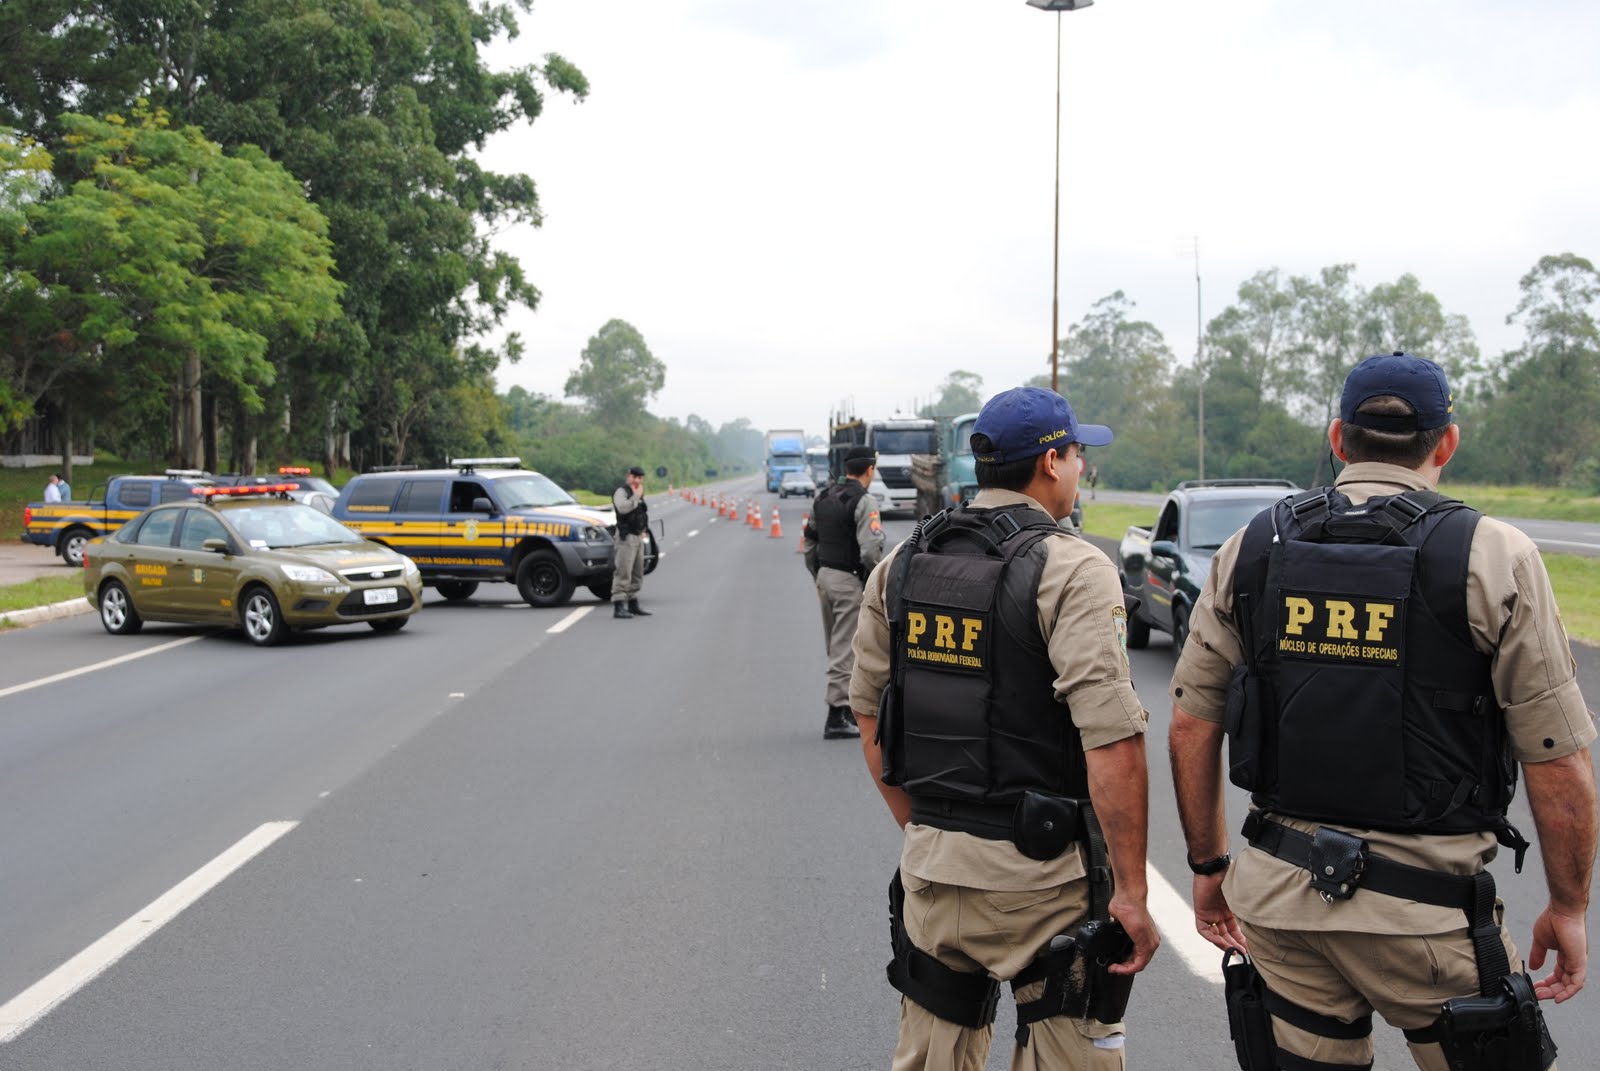 FERIADÃO: PRF reforça policiamento ostensivo e de prevenção em todo Brasil no feriado